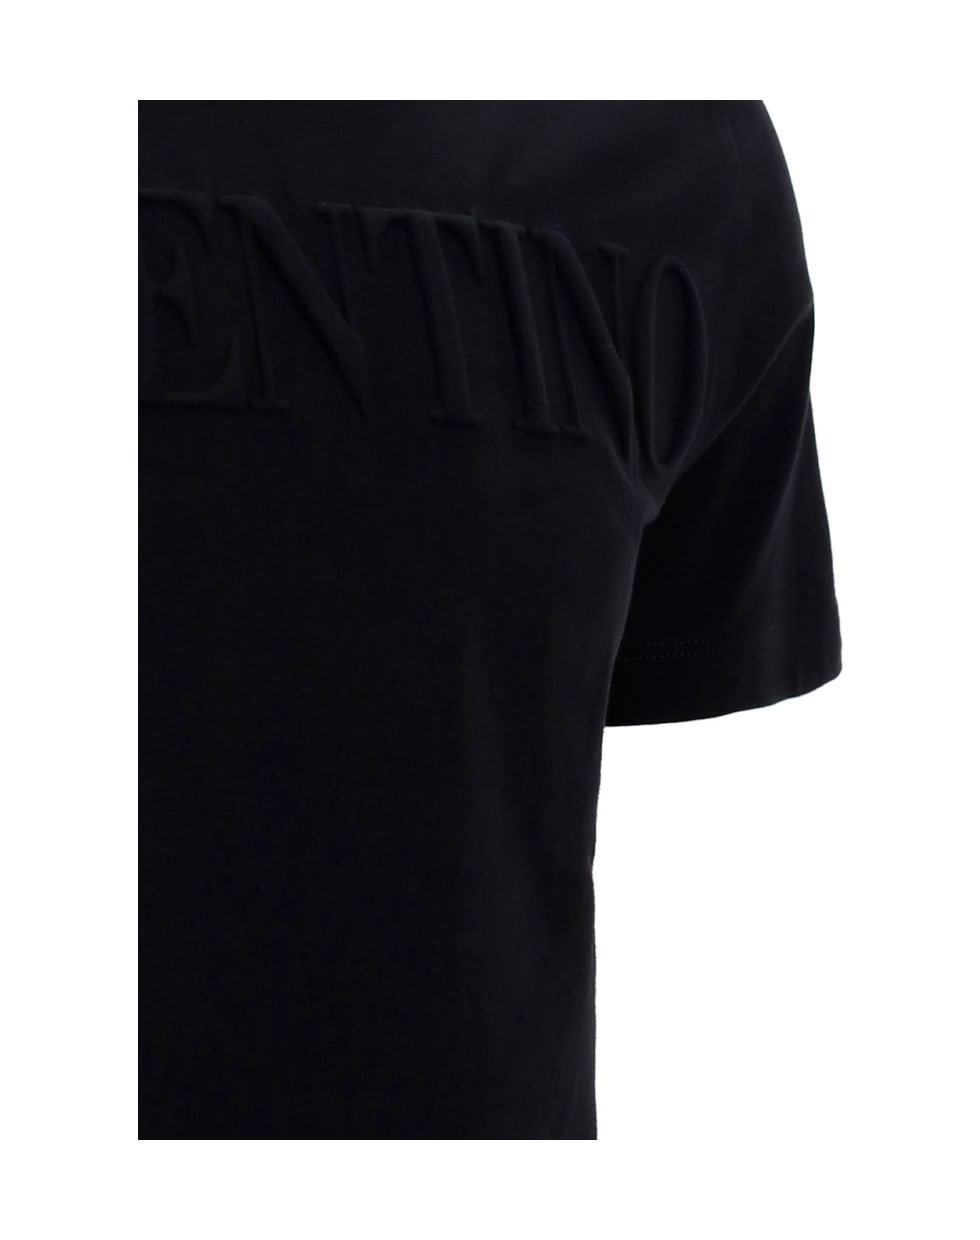 Valentino T-shirt - Nero